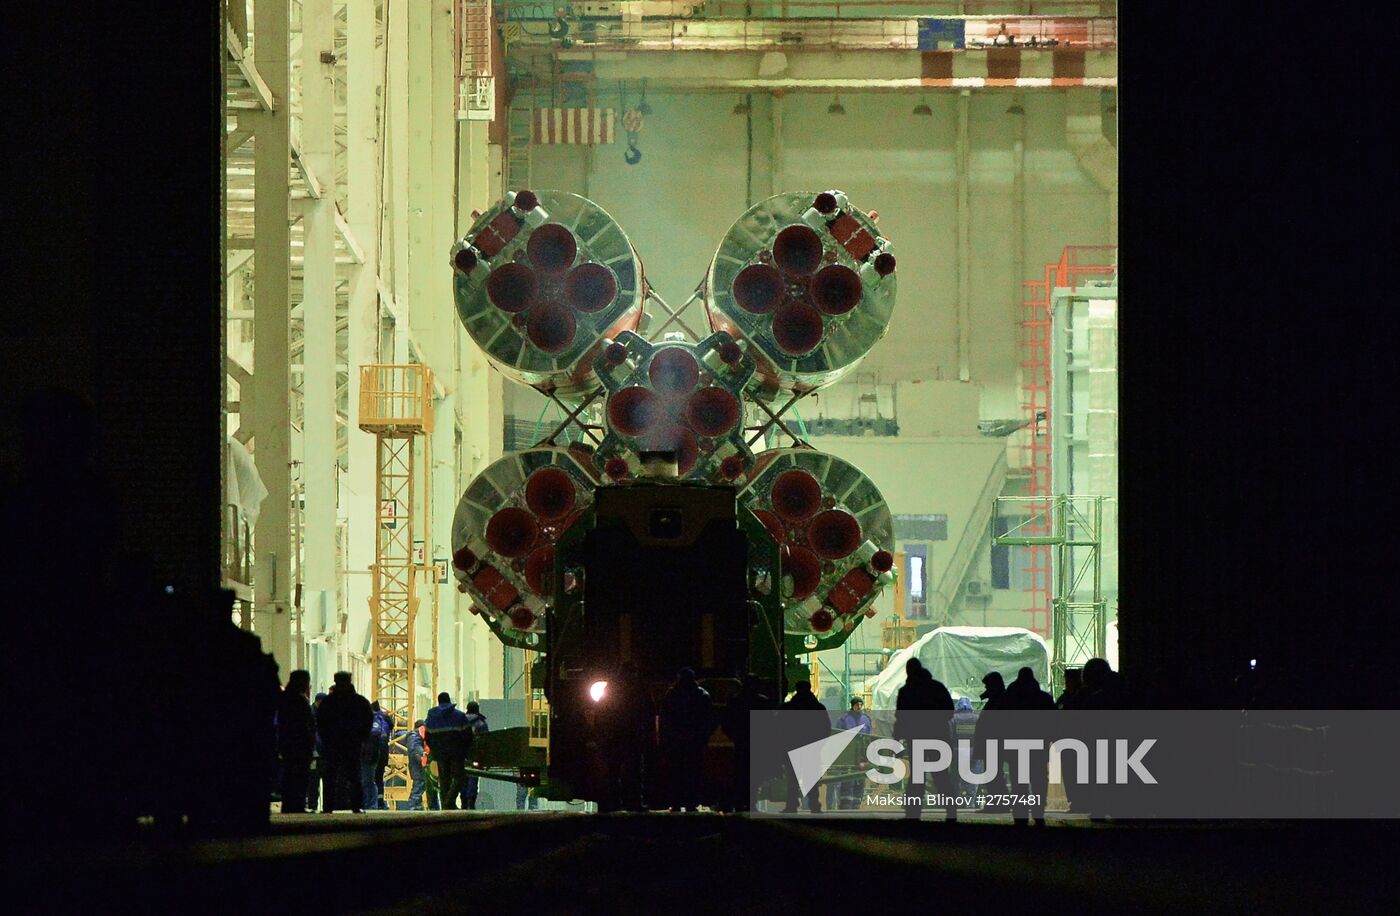 Soyuz-FG carrier rocket with Soyuz TMA spacecraft installed at Gagarin's Start launch pad